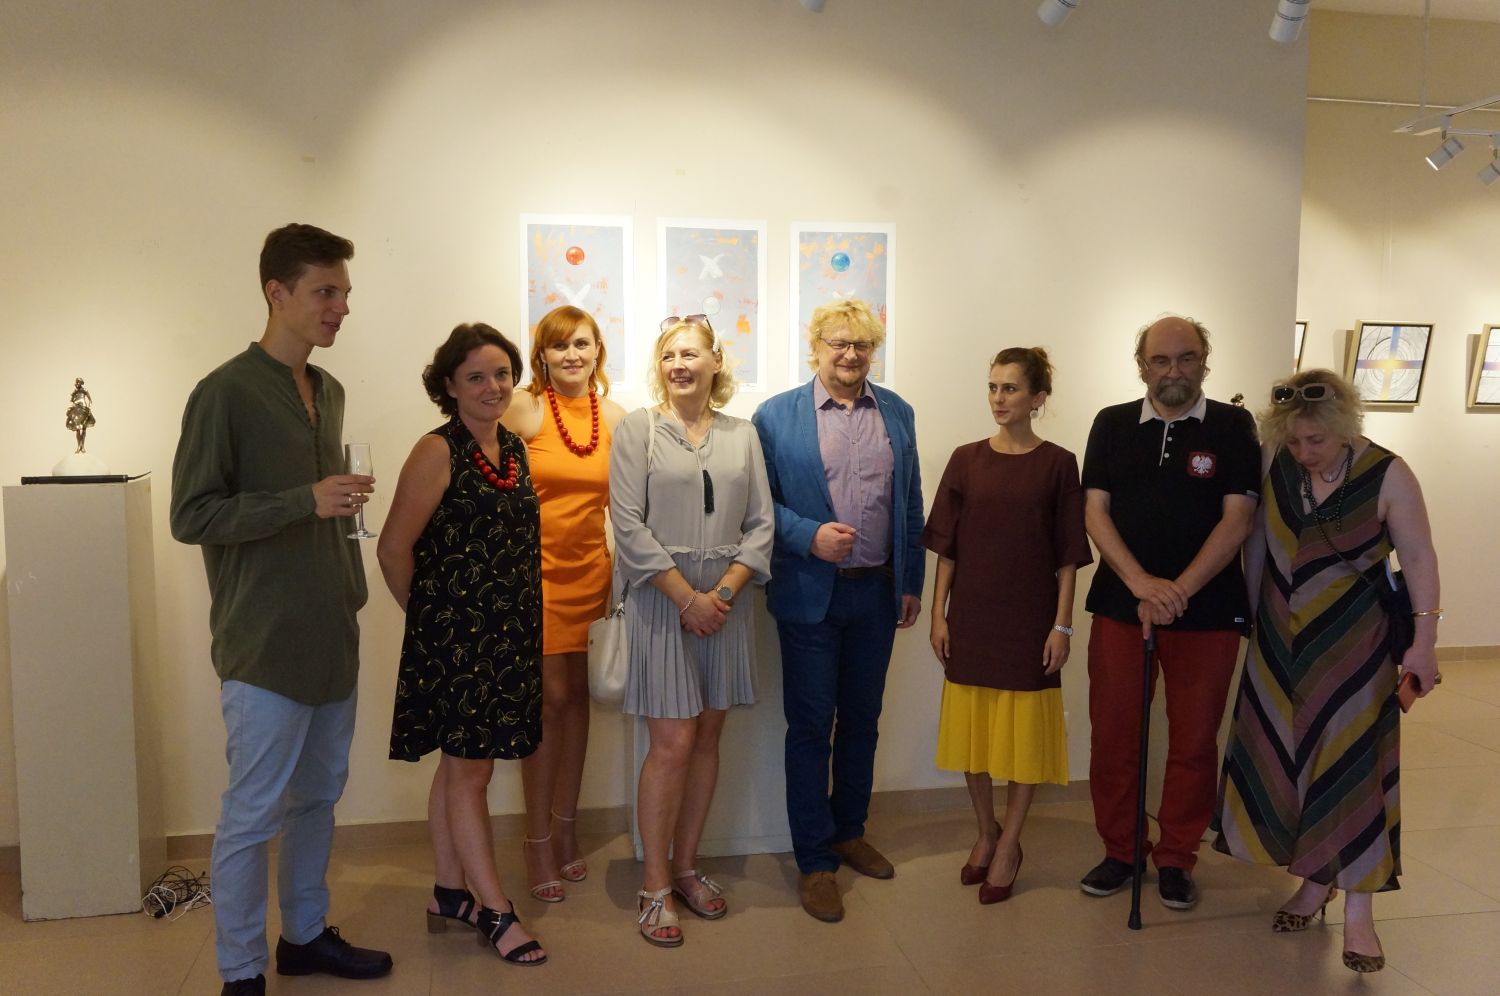 Zdjęcie przedstawia grupę osób stojących na tle obrazów wiszących na jasnych ścianach. Osoby są elegancko ubrane. To przedstawiciele Małopolski i Adżarii oraz artyści.